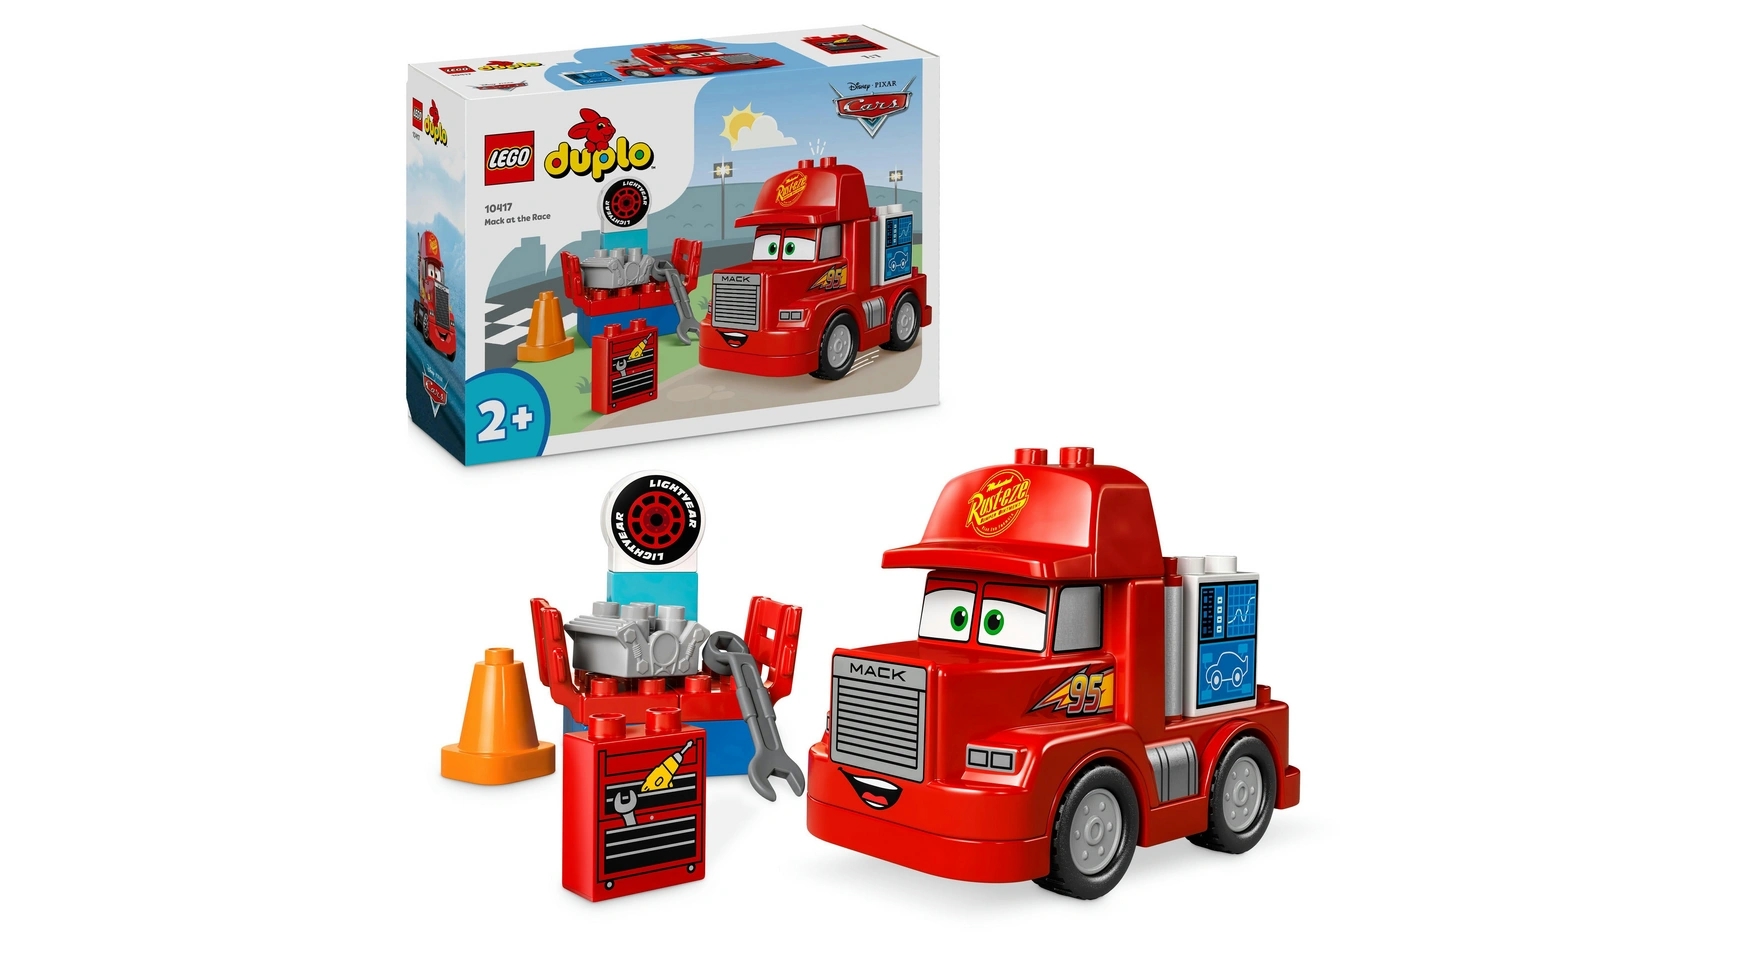 Lego DUPLO Гоночный грузовик Mack от Disney и Pixar Cars